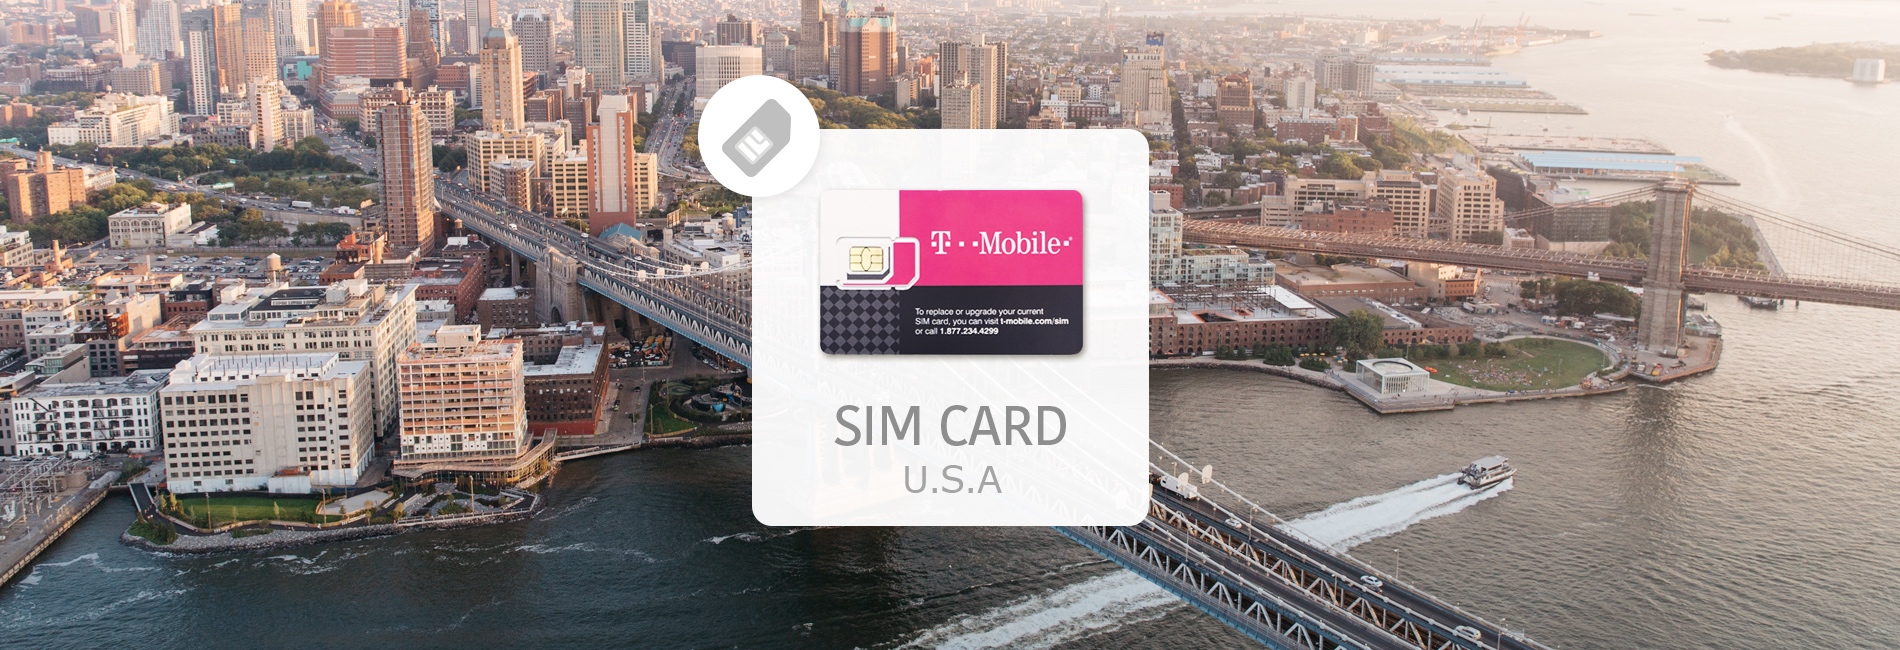 t mobile prepaid sim card